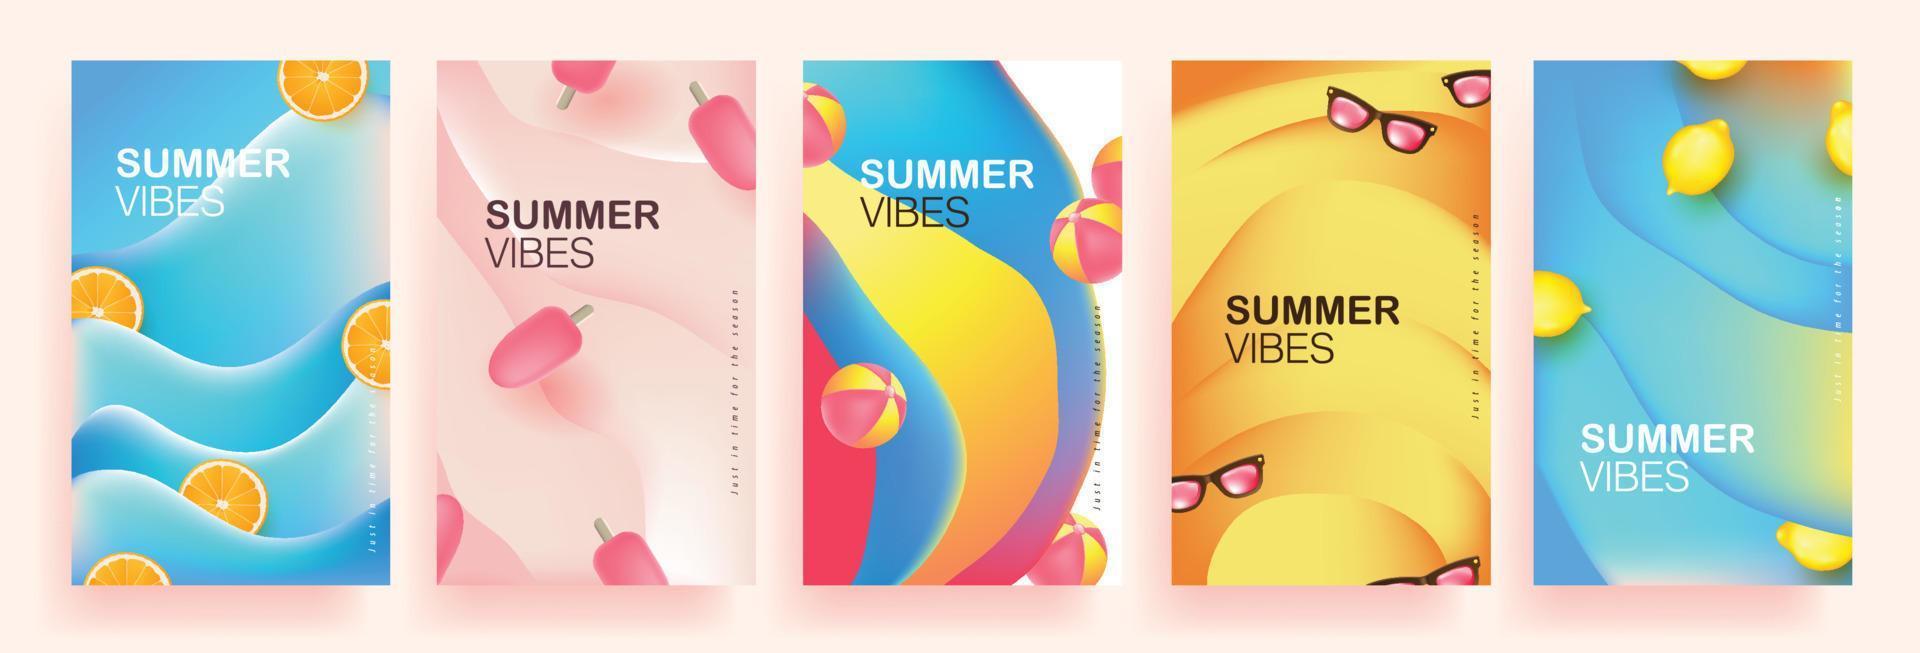 verzameling abstracte achtergrondontwerpen, kleurrijke zomerverkoopposter, promotionele inhoud op sociale media vector